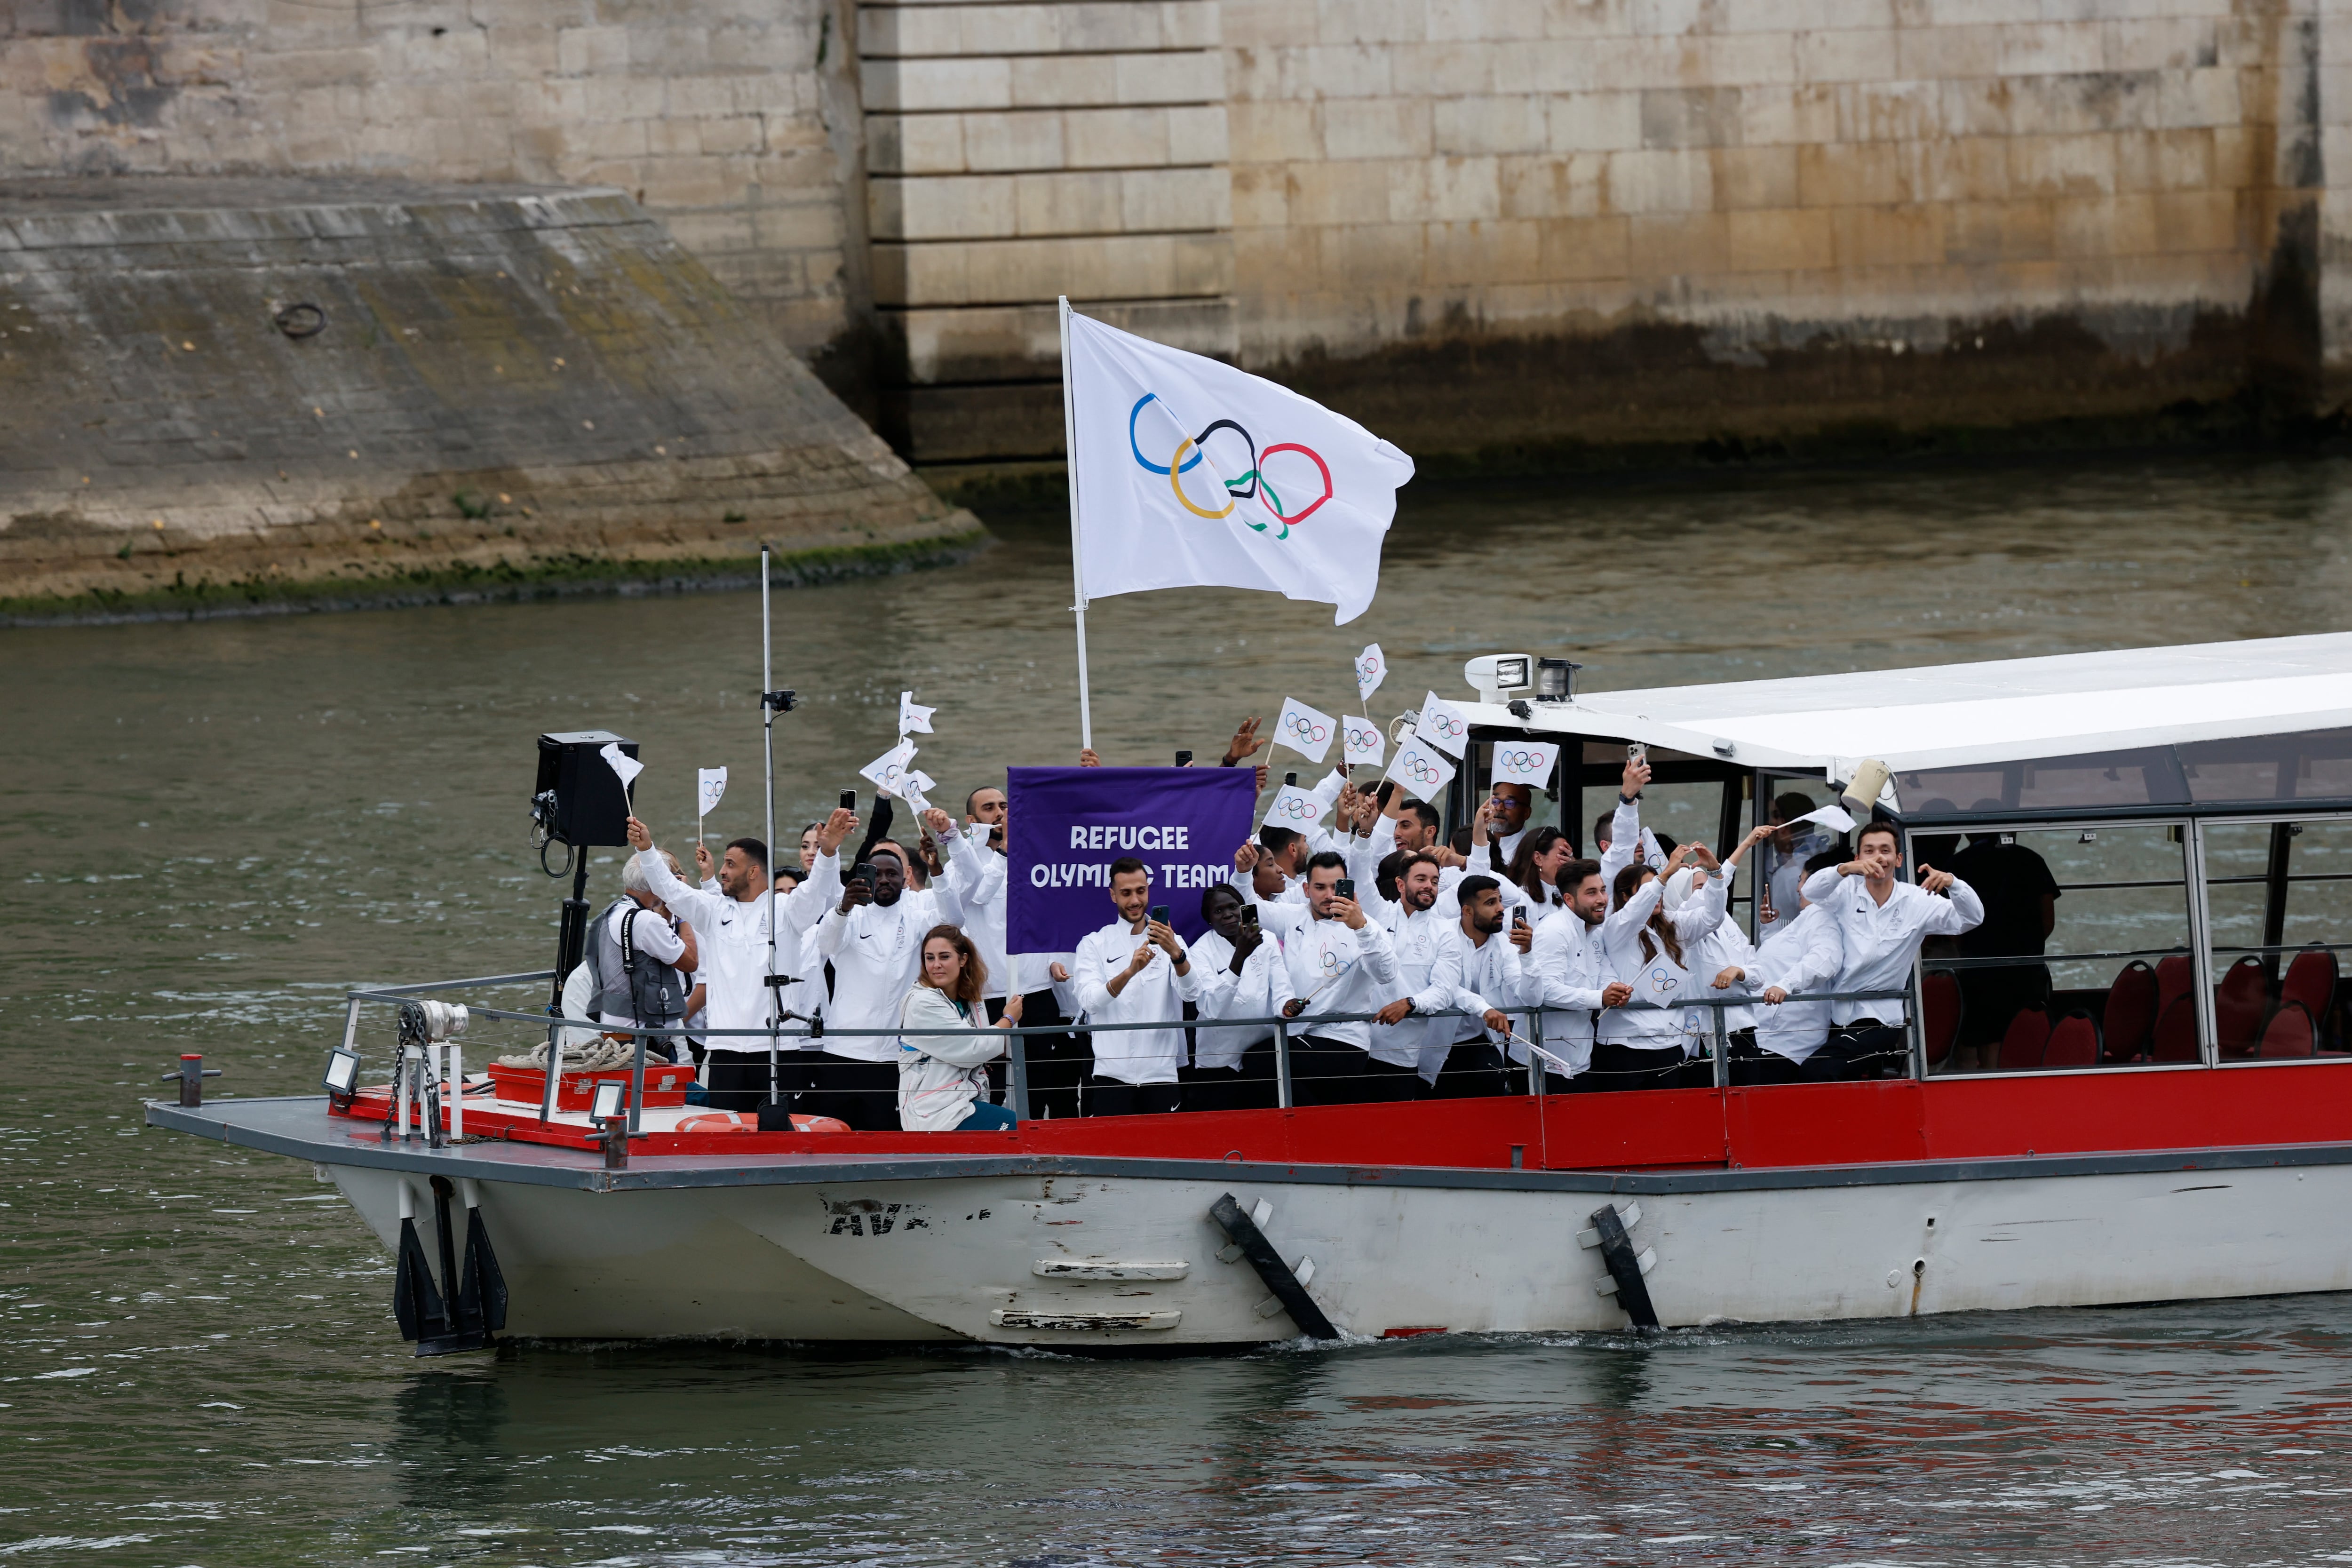 La selección de refugiados bajo la bandera de las olimpiadas desfilan por el río Sena, durante la ceremonia de inauguración de los Juegos Olímpicos de París 2024, este viernes en la capital francesa. EFE/Julio Muñoz